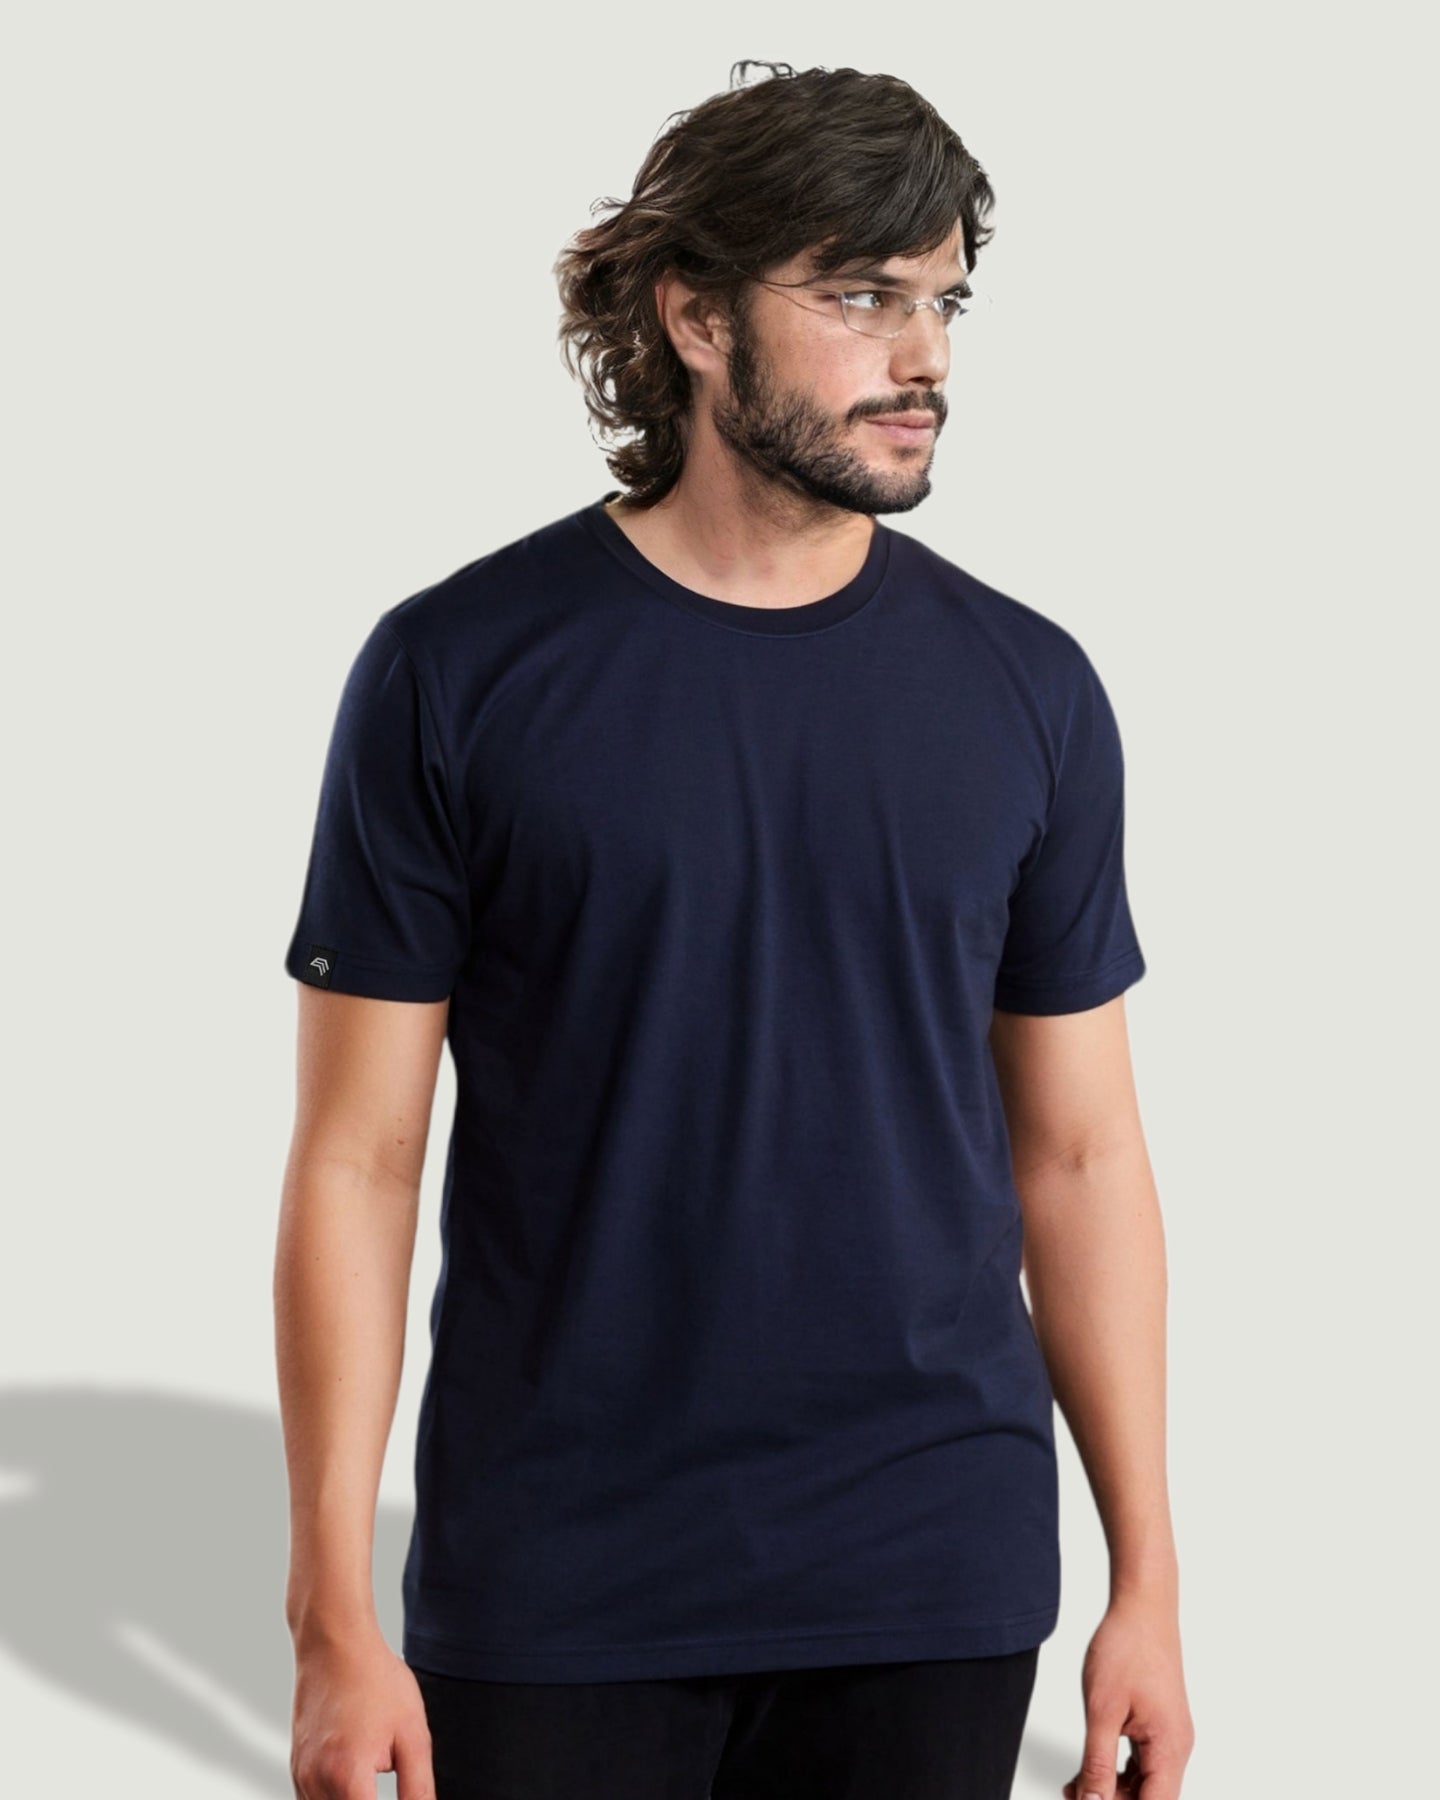 RMH 0101 ― Herren Luxury Bio-Baumwolle T-Shirt - Rot